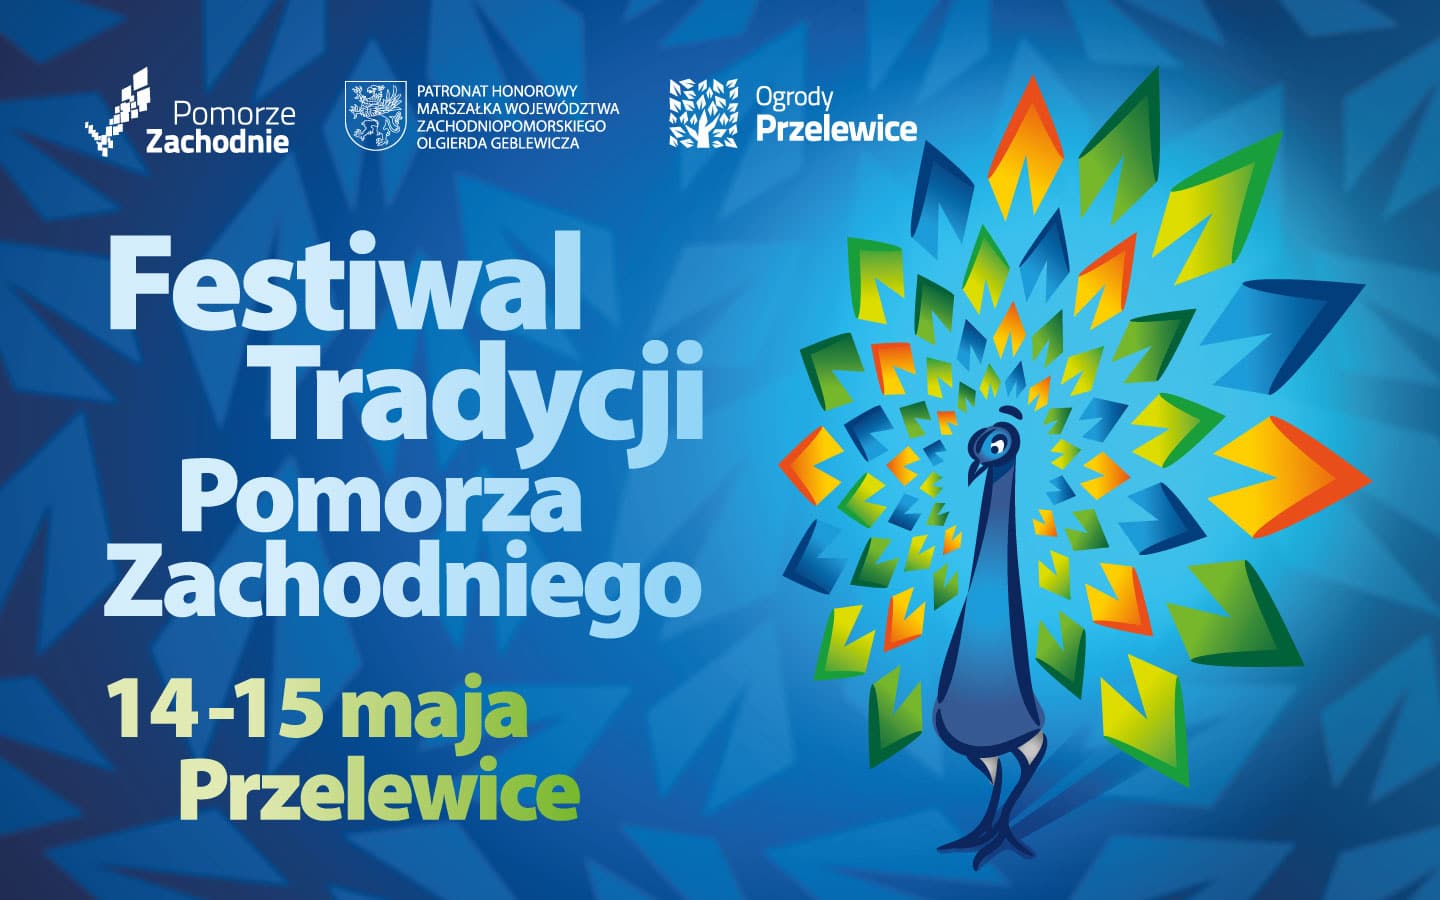 You are currently viewing Festiwal Tradycji Pomorza Zachodniego